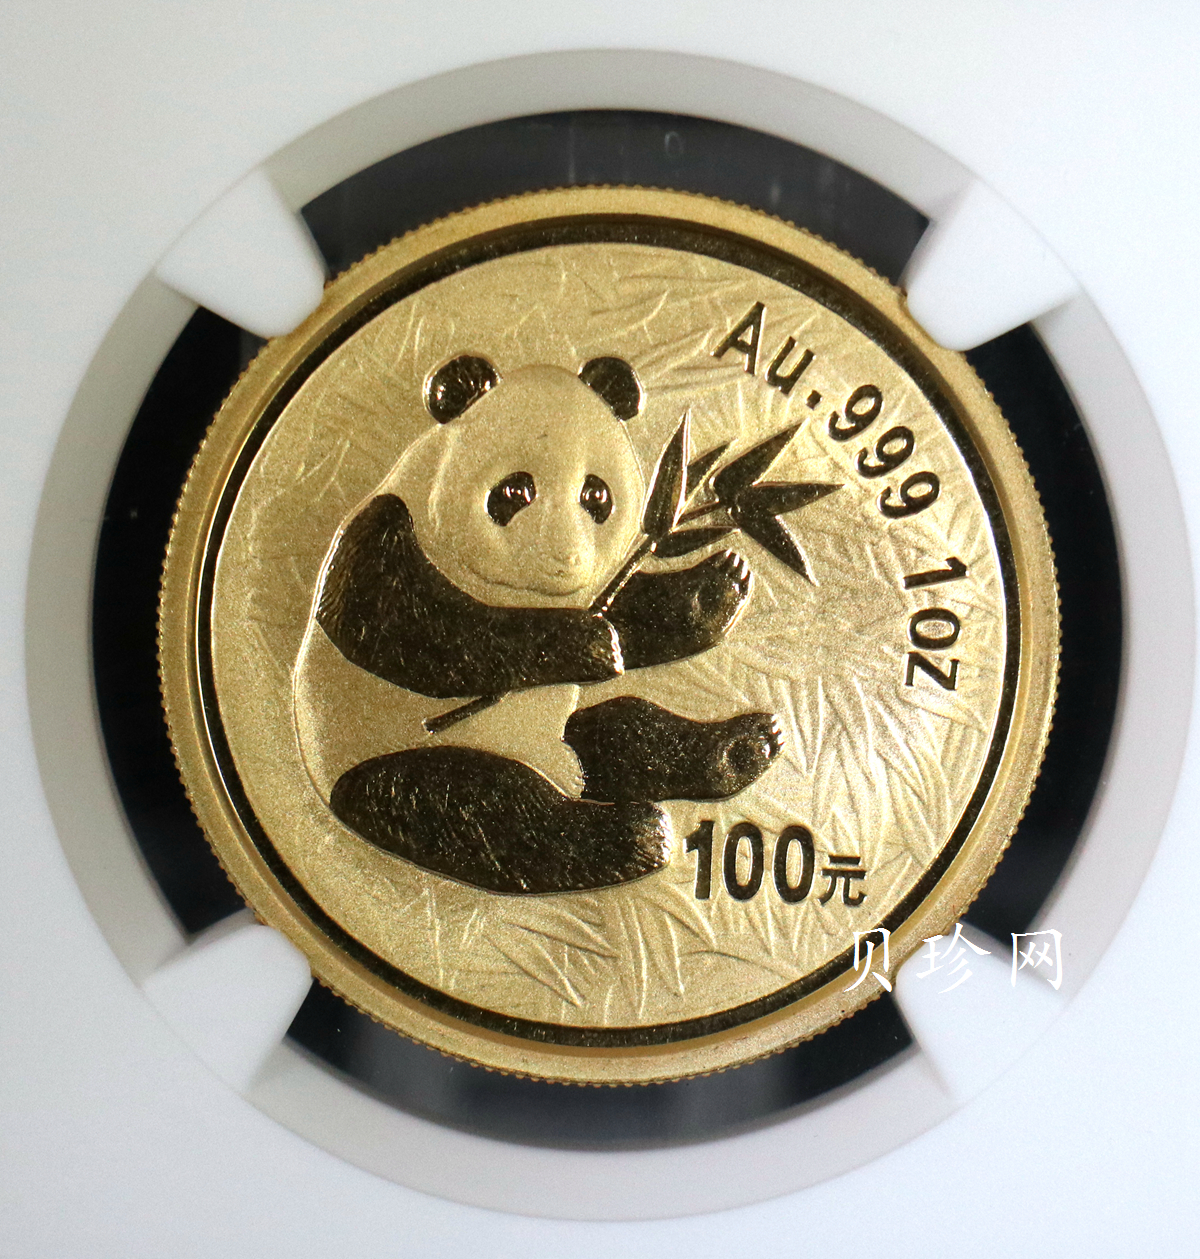 【000101】2000版熊猫金银纪念币1盎司普制金币